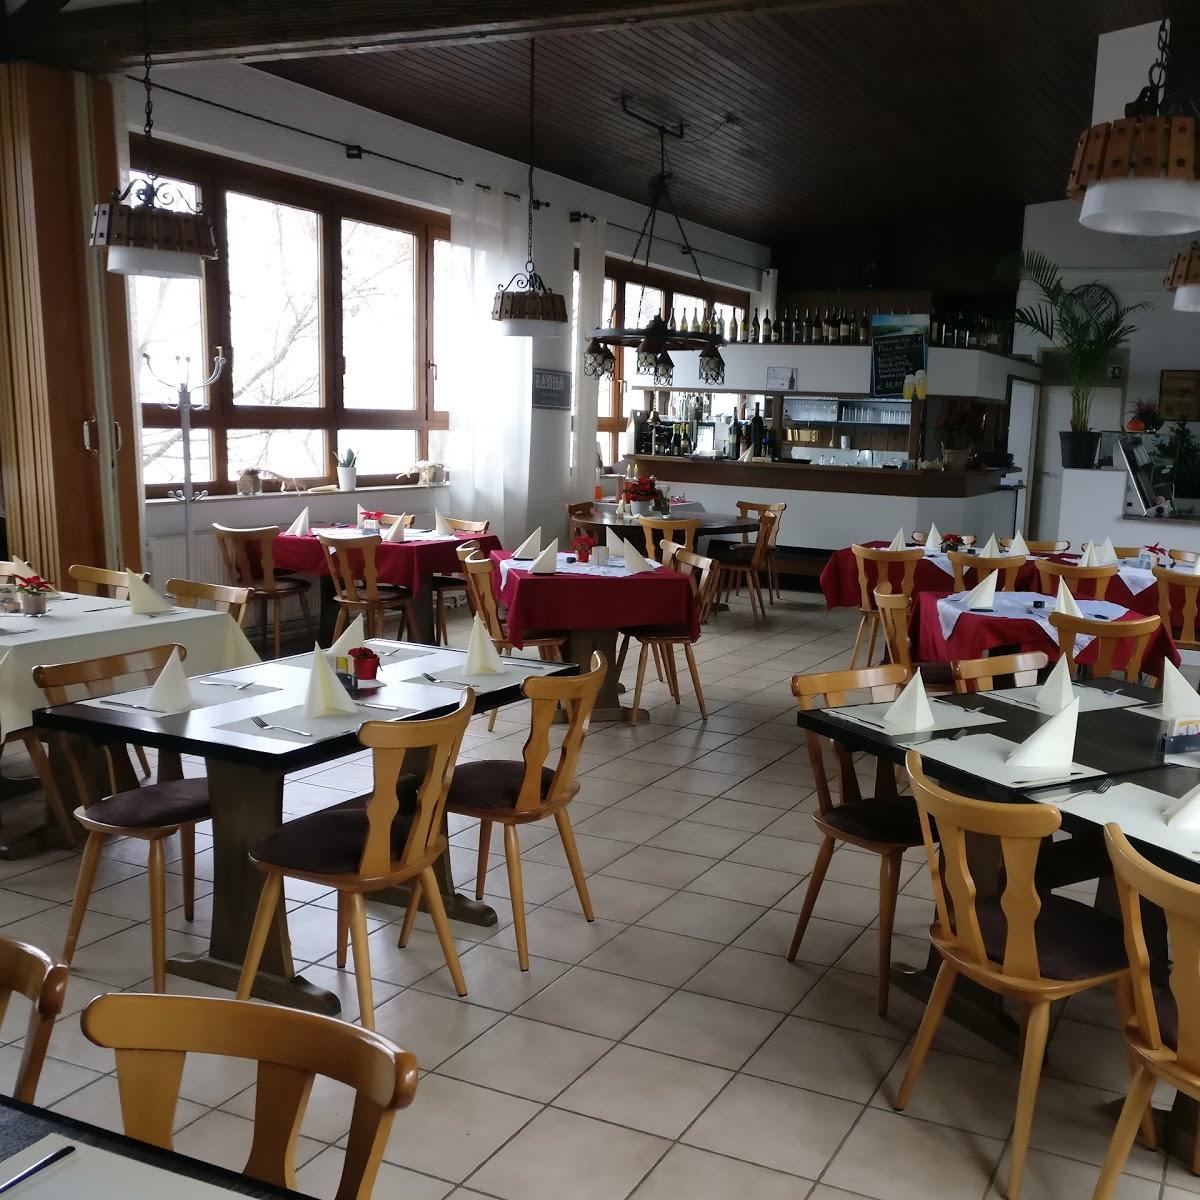 Restaurant "PSG-Aurora-Vereinsgaststätte" in Pforzheim